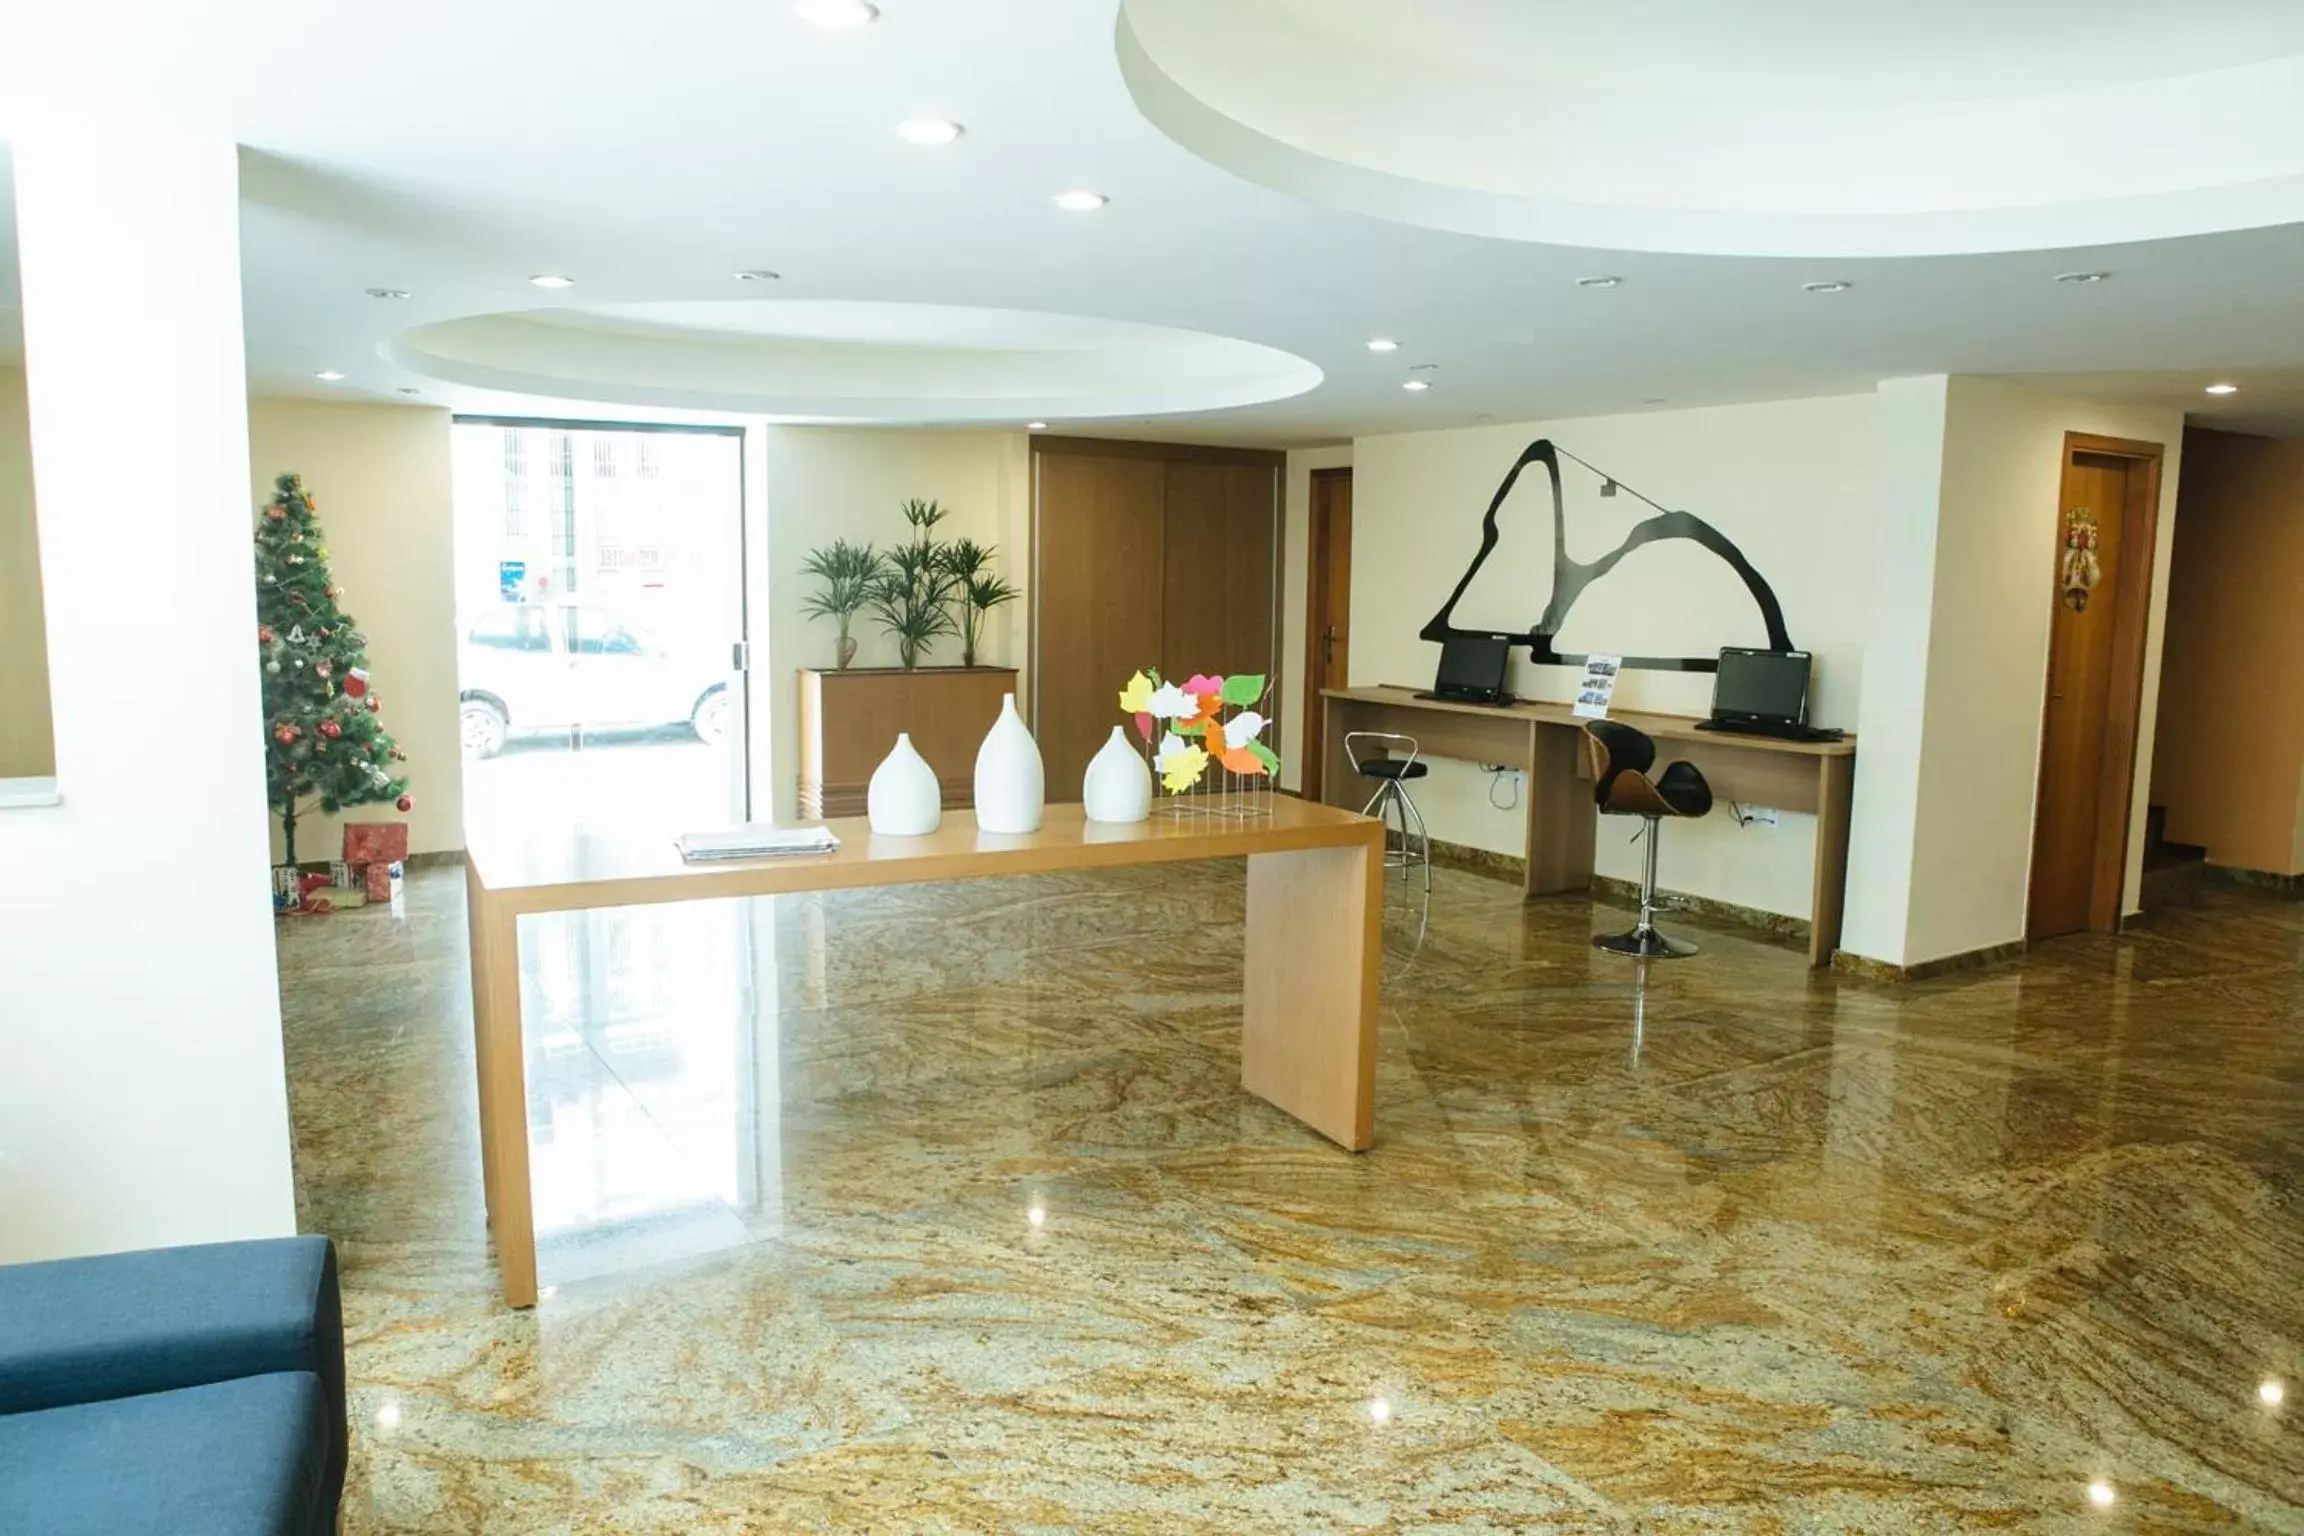 Lobby or reception, Lobby/Reception in Gamboa Rio Hotel